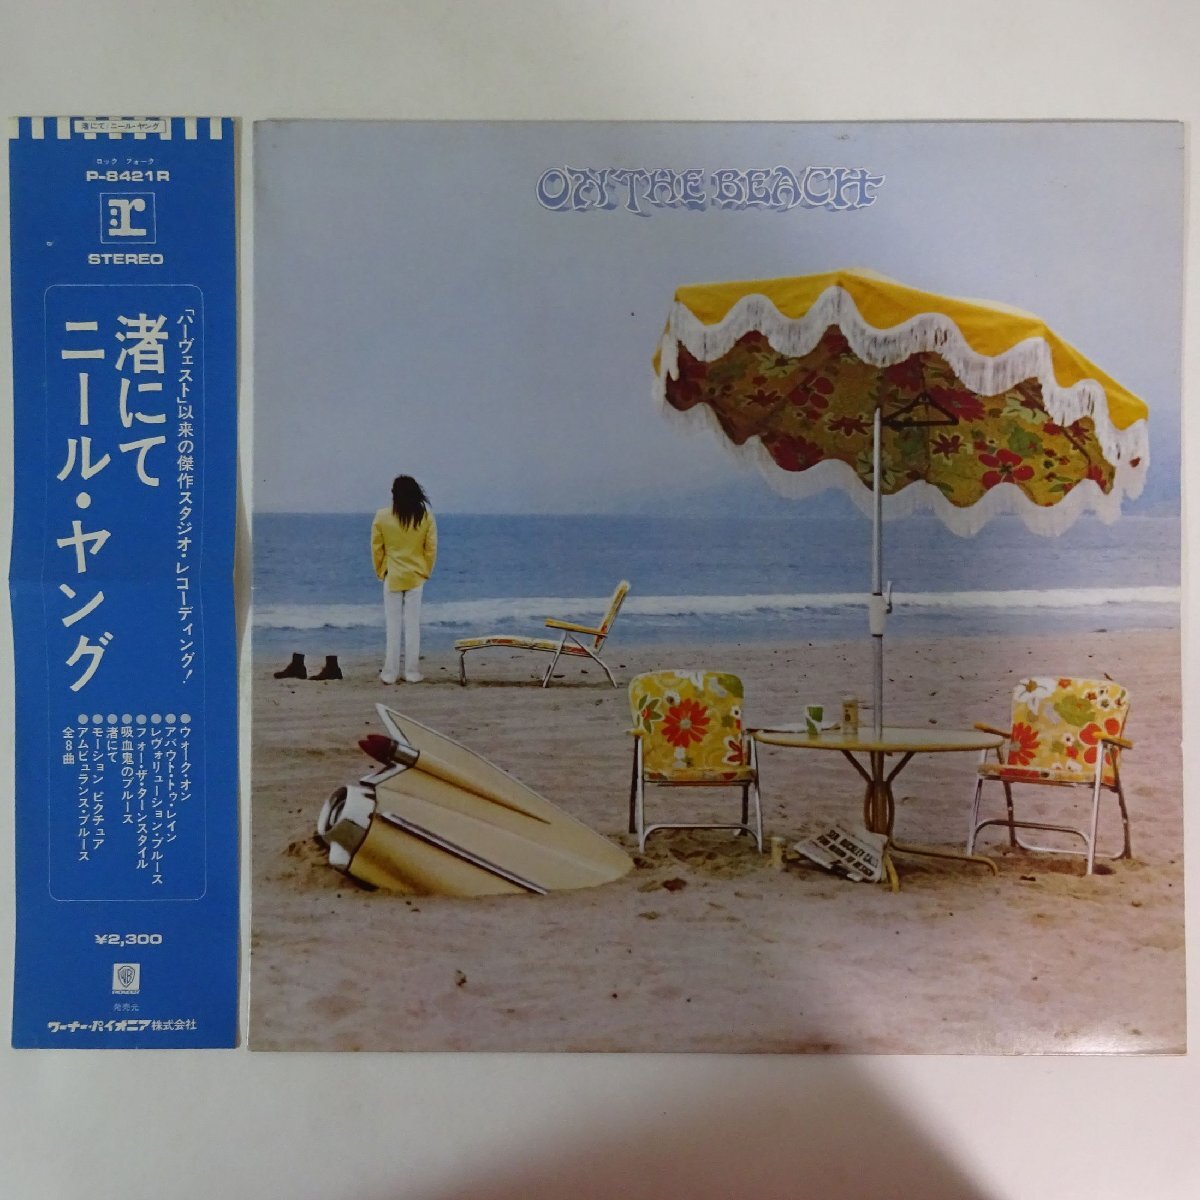 14031238;【帯付/補充票】Neil Young / On The Beach 渚にての画像1